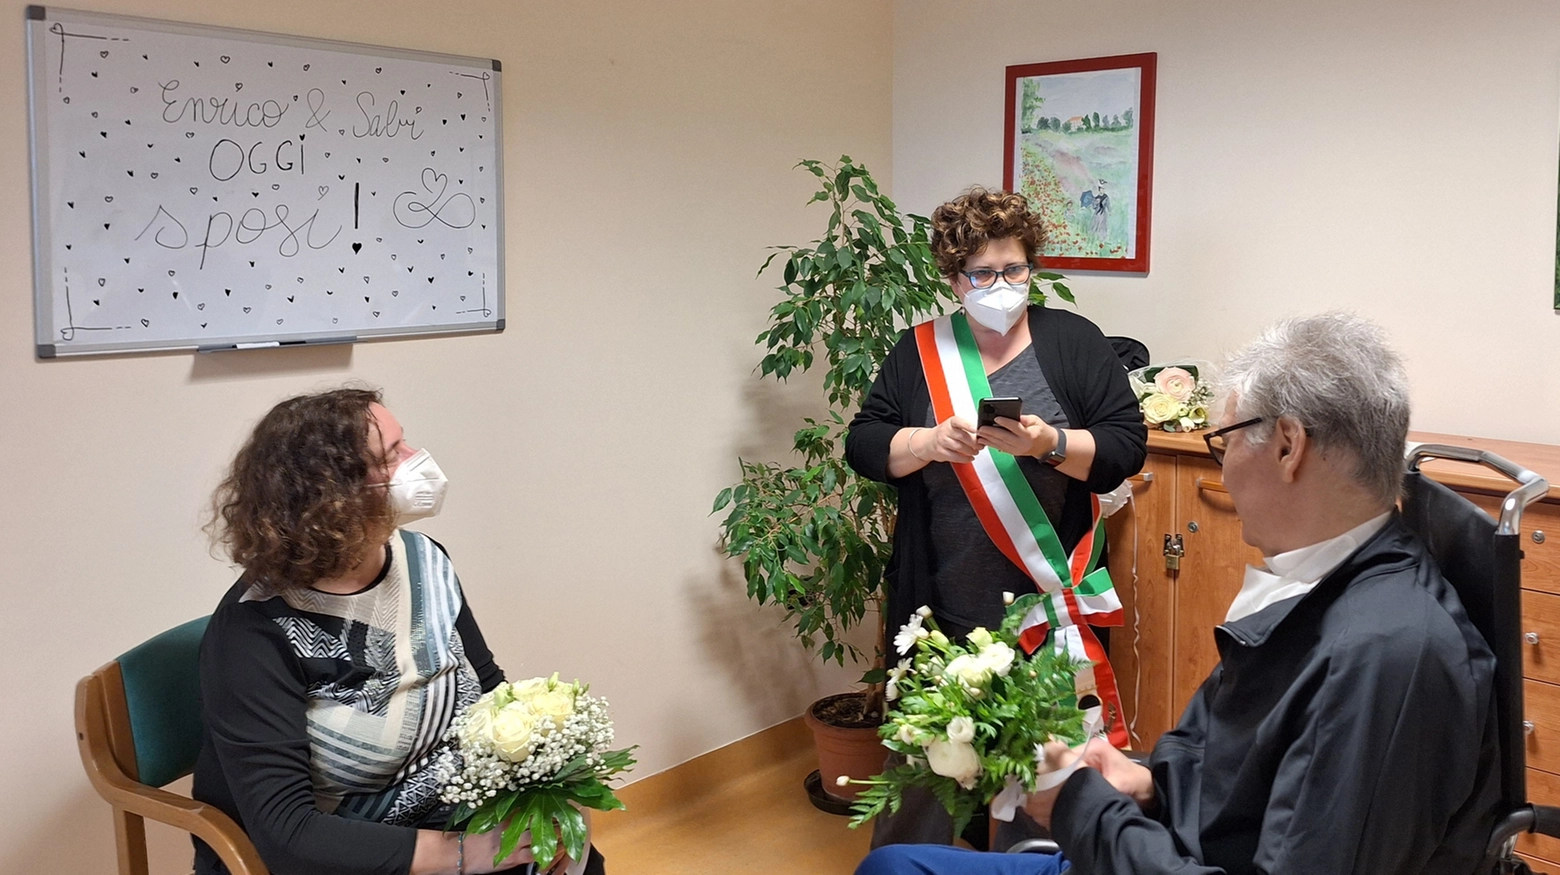 Sabrina Biscaro ed Enrico Gentili si sono sposati davanti all’ufficiale del Comune di Ferrara, la dott.ssa Laura Tonioli